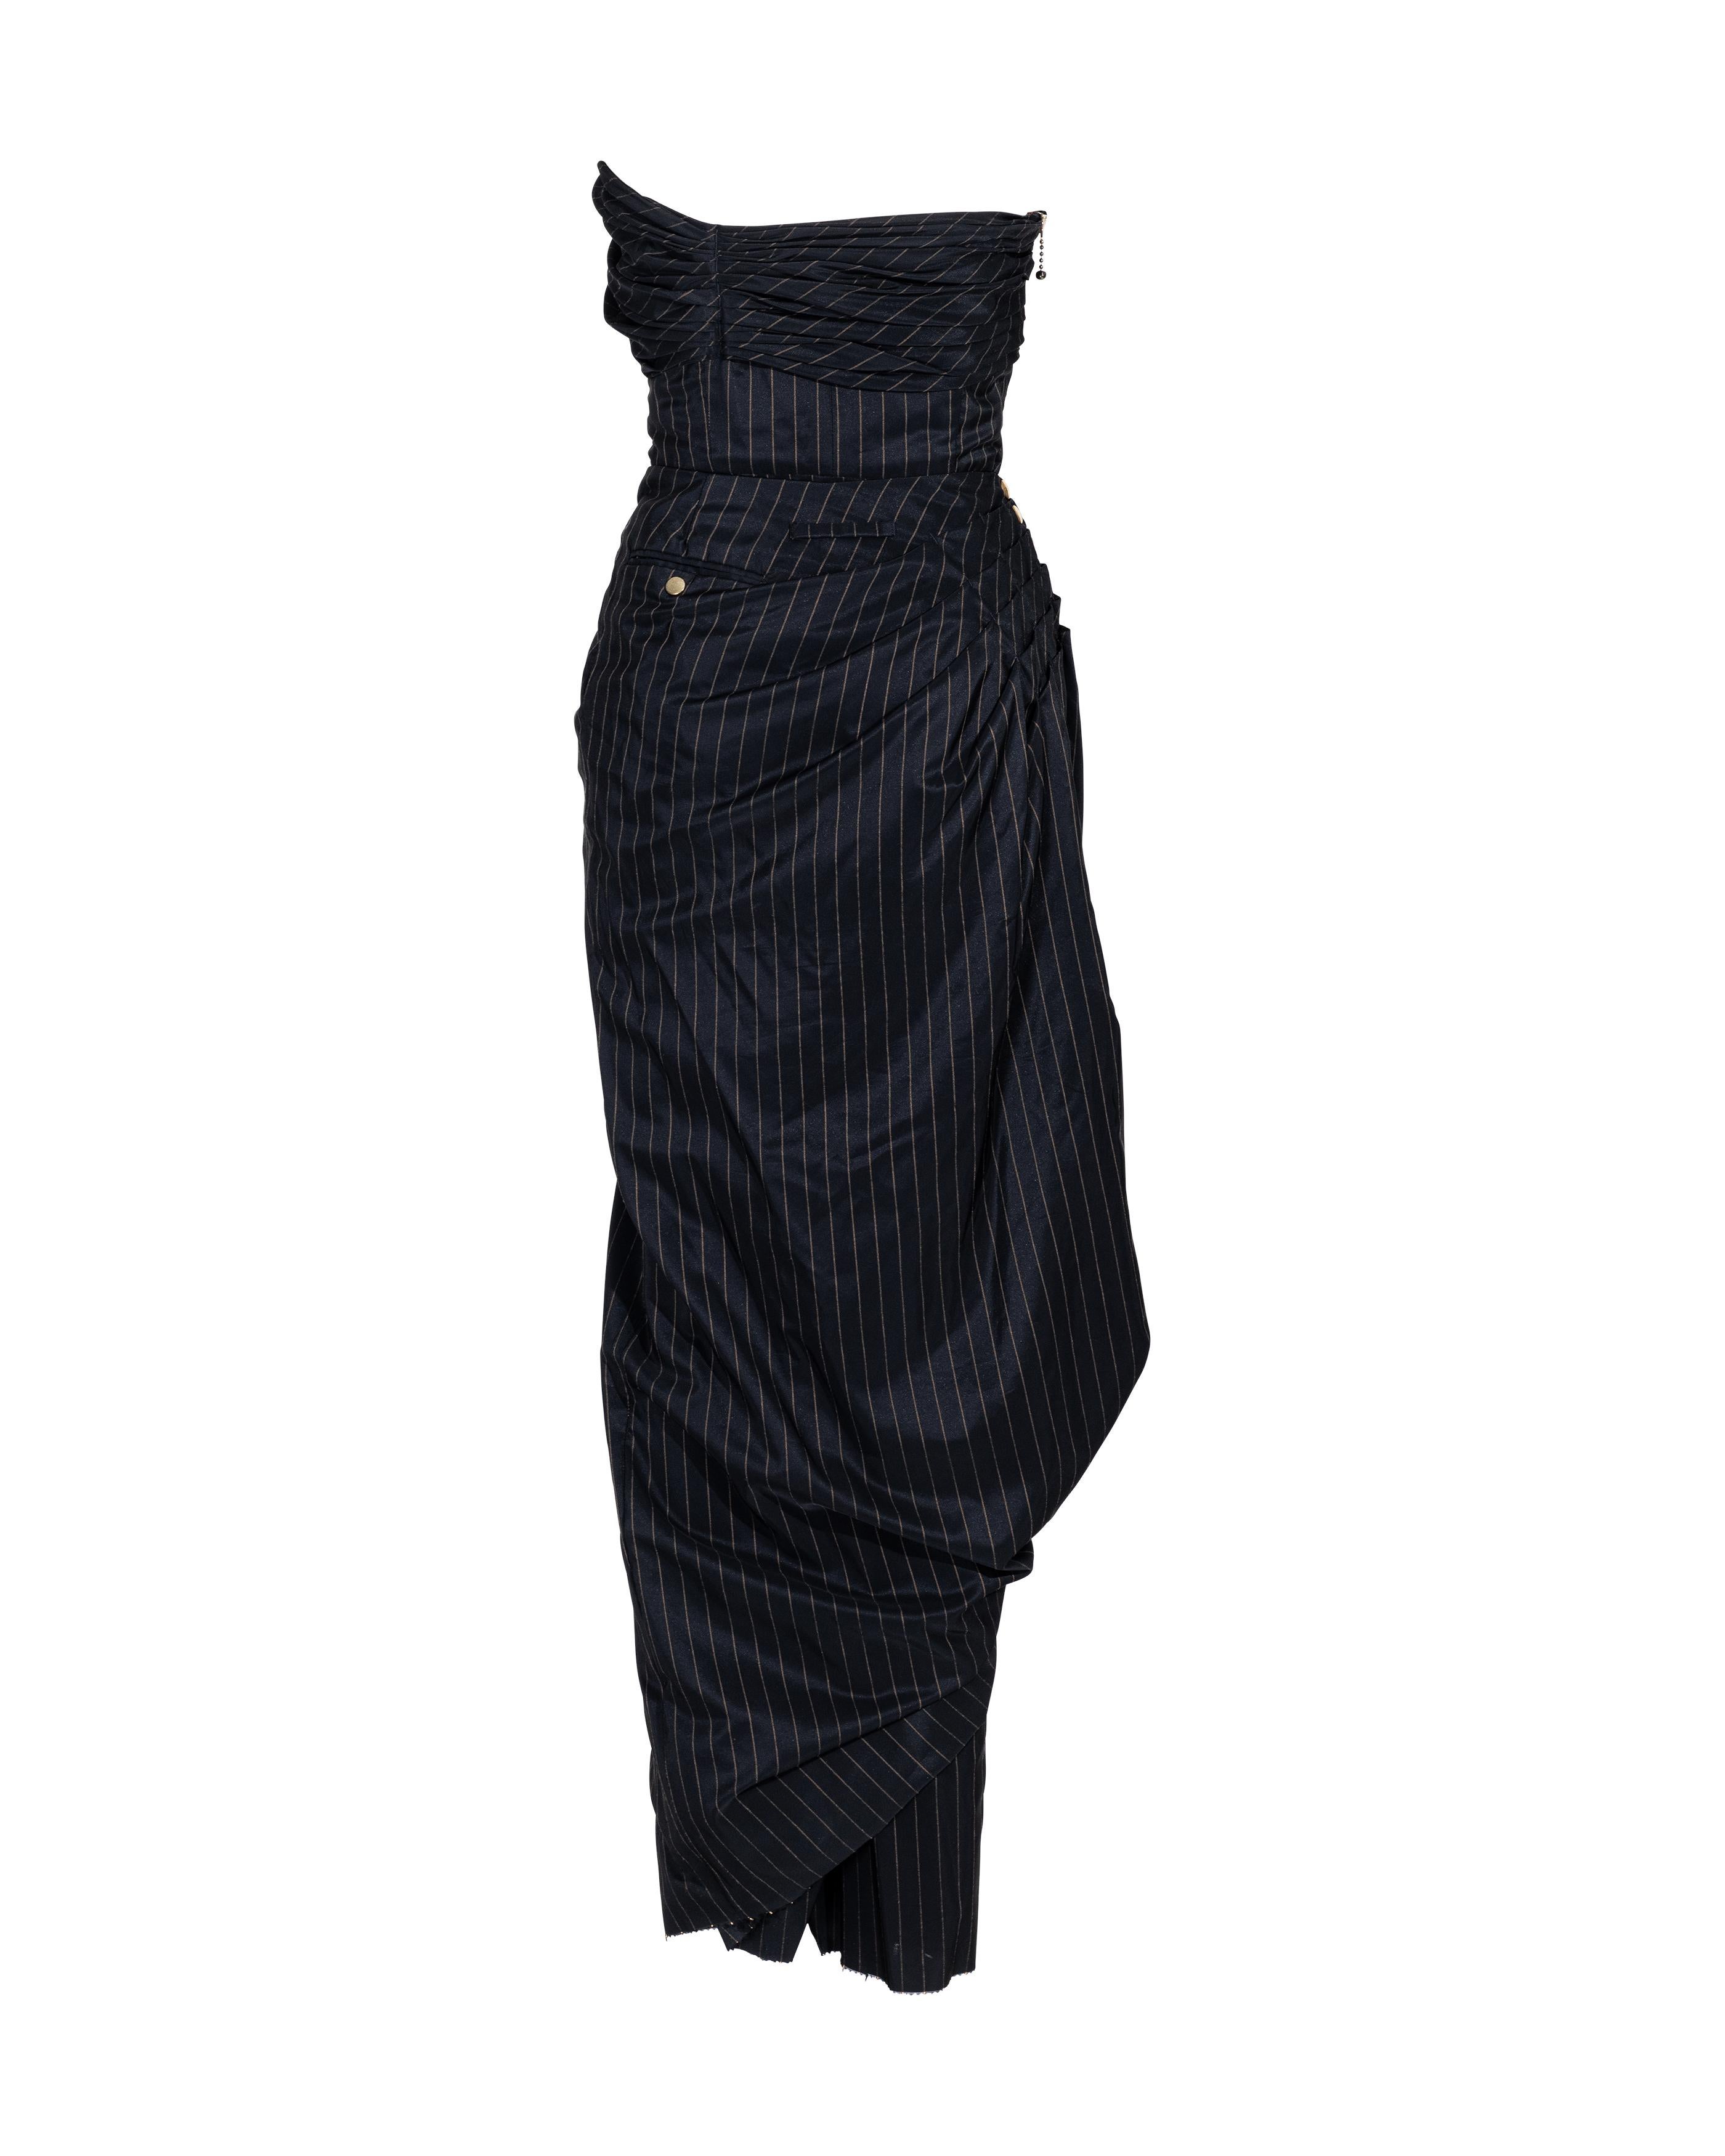 S/S 1995 Jean Paul Gaultier Pinstripe Strapless Bustle Gown 7